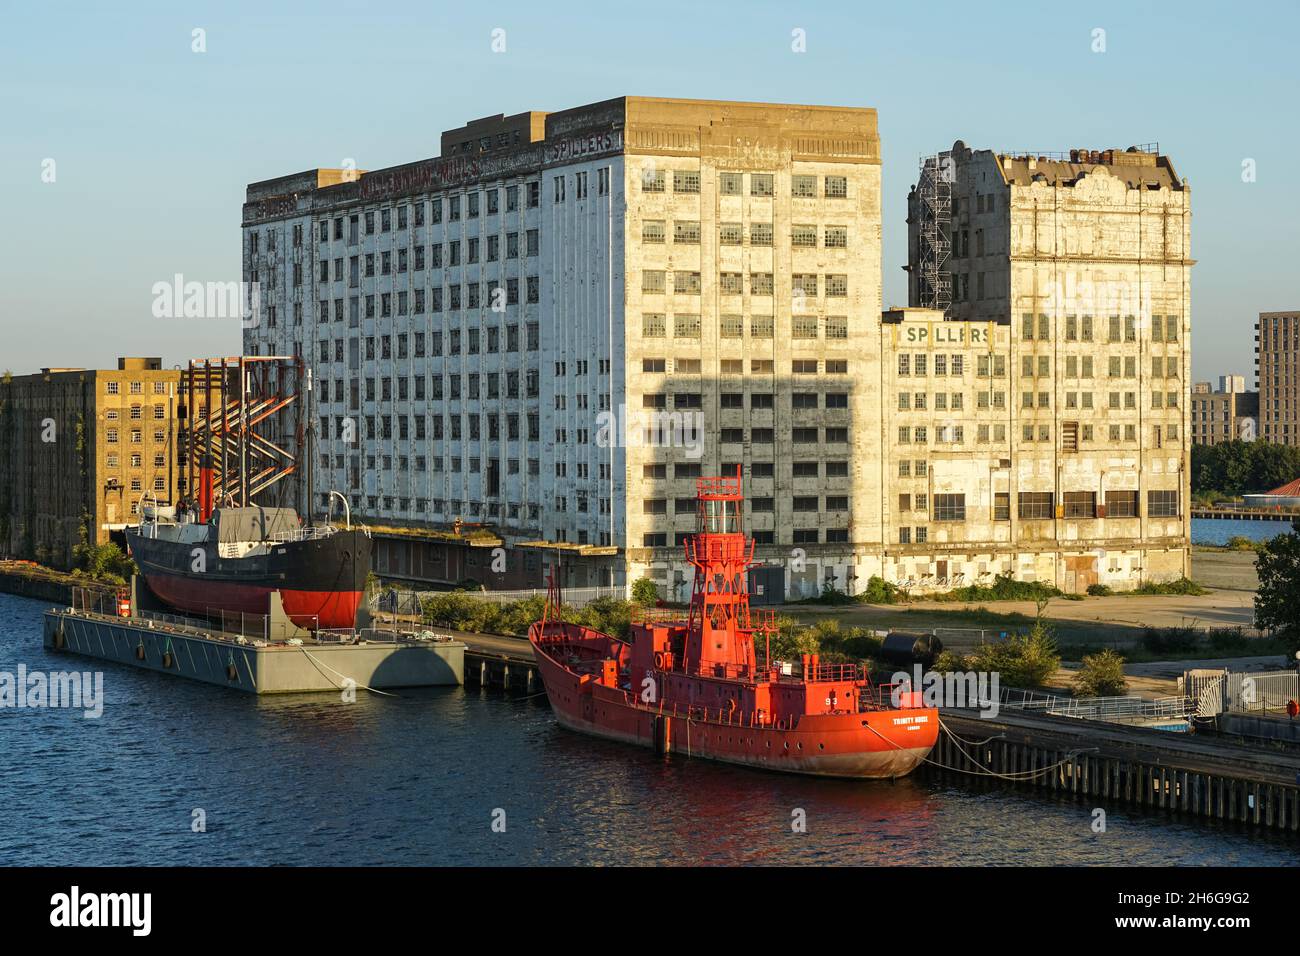 Millennium Mills Gebäude und das Royal Victoria Dock, London England Vereinigtes Königreich Großbritannien Stockfoto